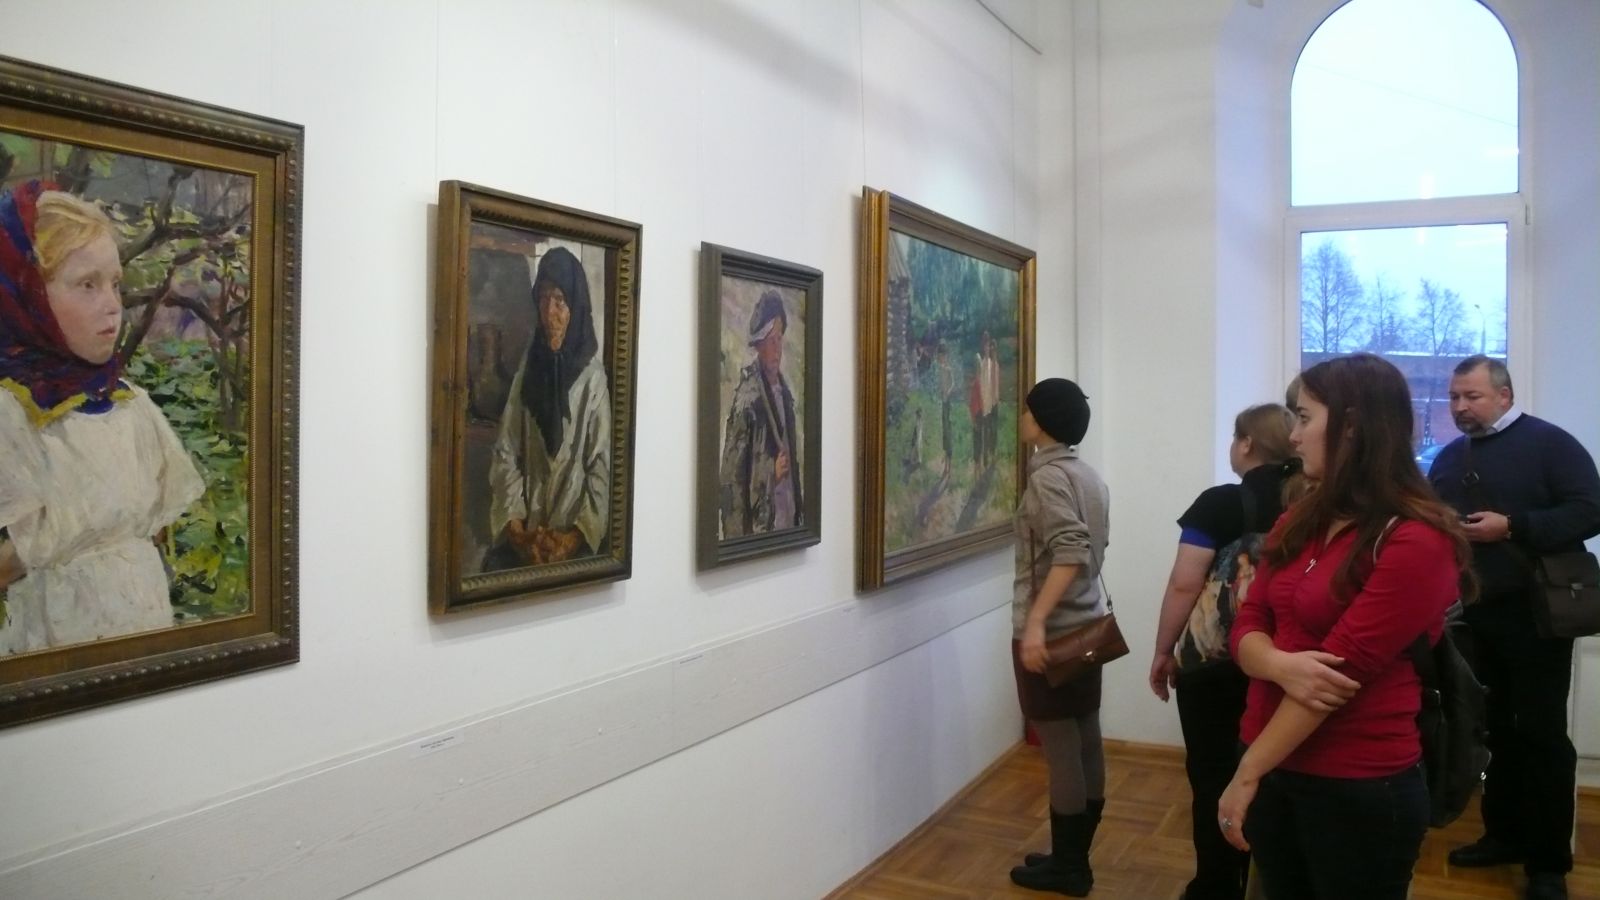 «Плащаница Вселенной» - так называется выставка, открывшаяся 11 ноября 2011 года в Нижегородском государственном выставочном комплексе на площади Минина и Пожарского.